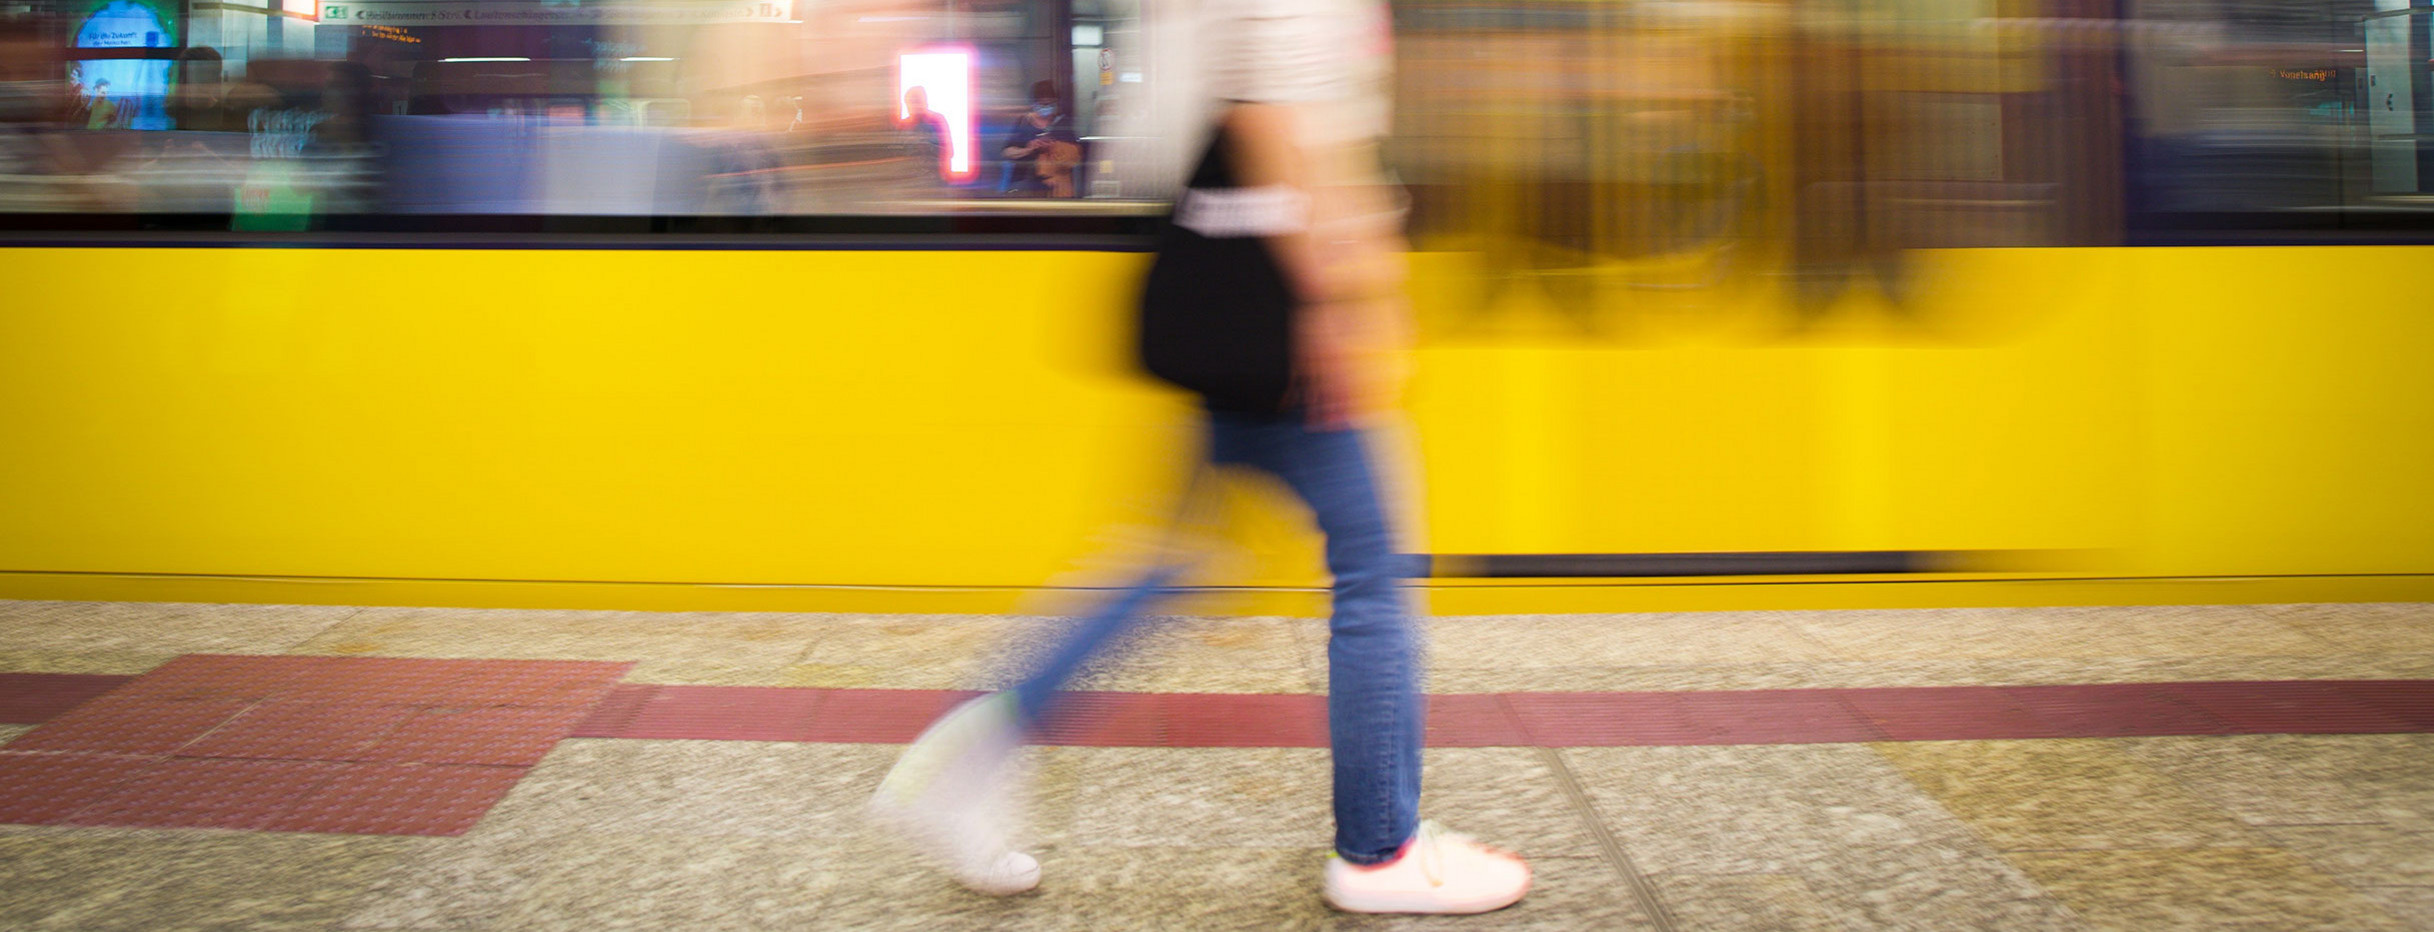 Verschwommenes Bild mit einer Frau, die an einem Bahnsteig entlangläuft während eine gelbe Bahn vorbeifährt.